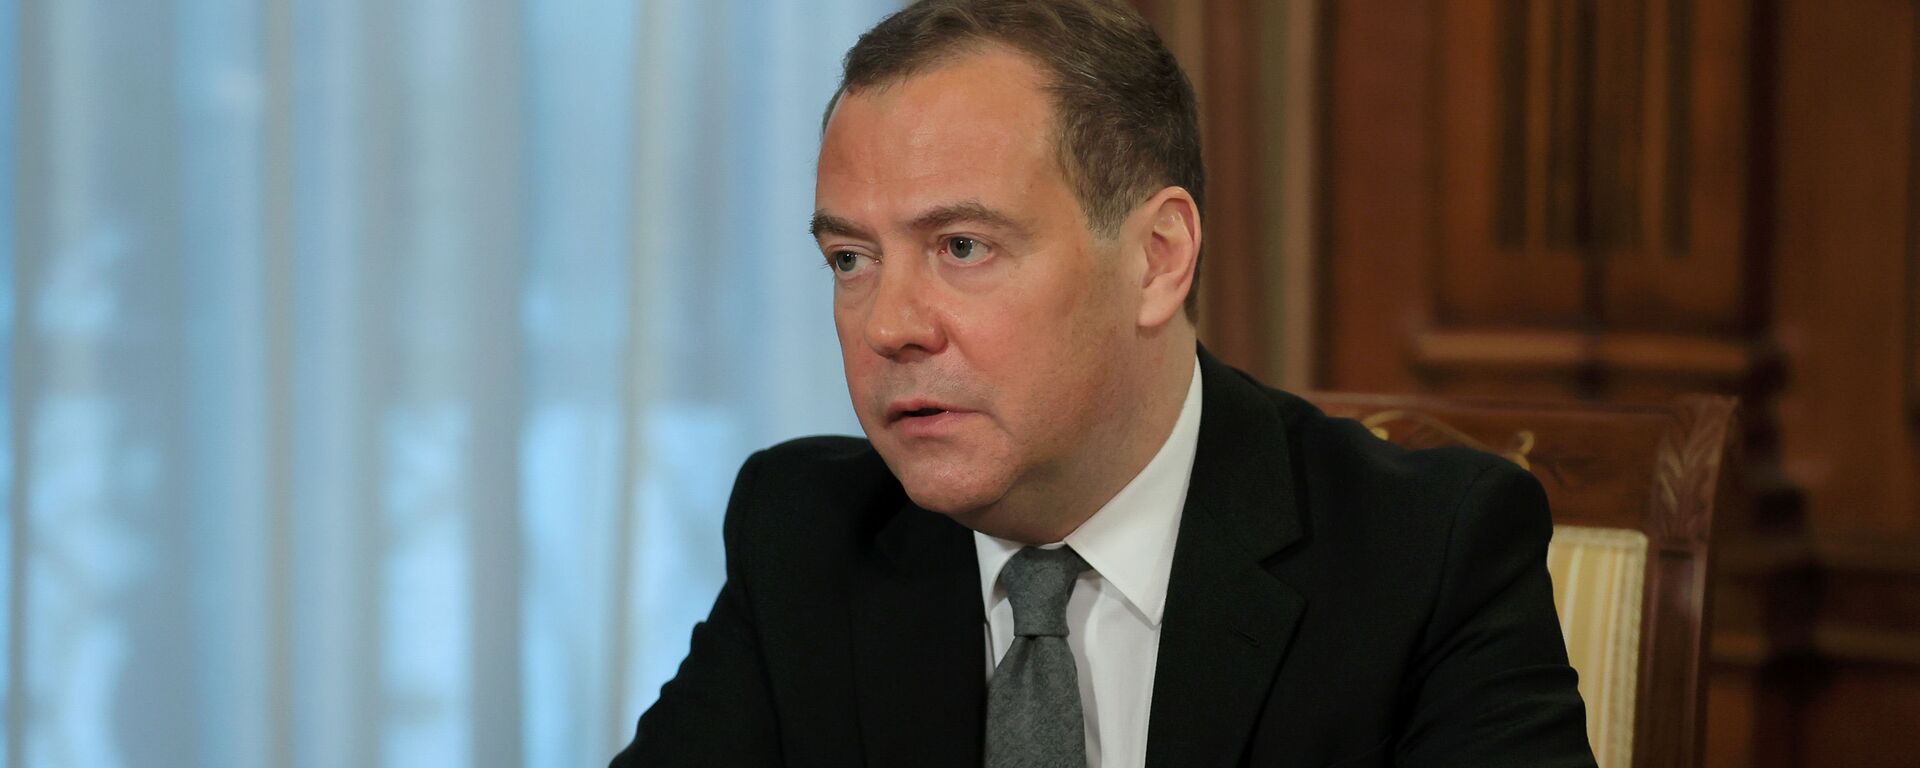 Заместитель председателя Совбеза РФ Д. Медведев дал интервью российским СМИ - Sputnik Аҧсны, 1920, 01.02.2021